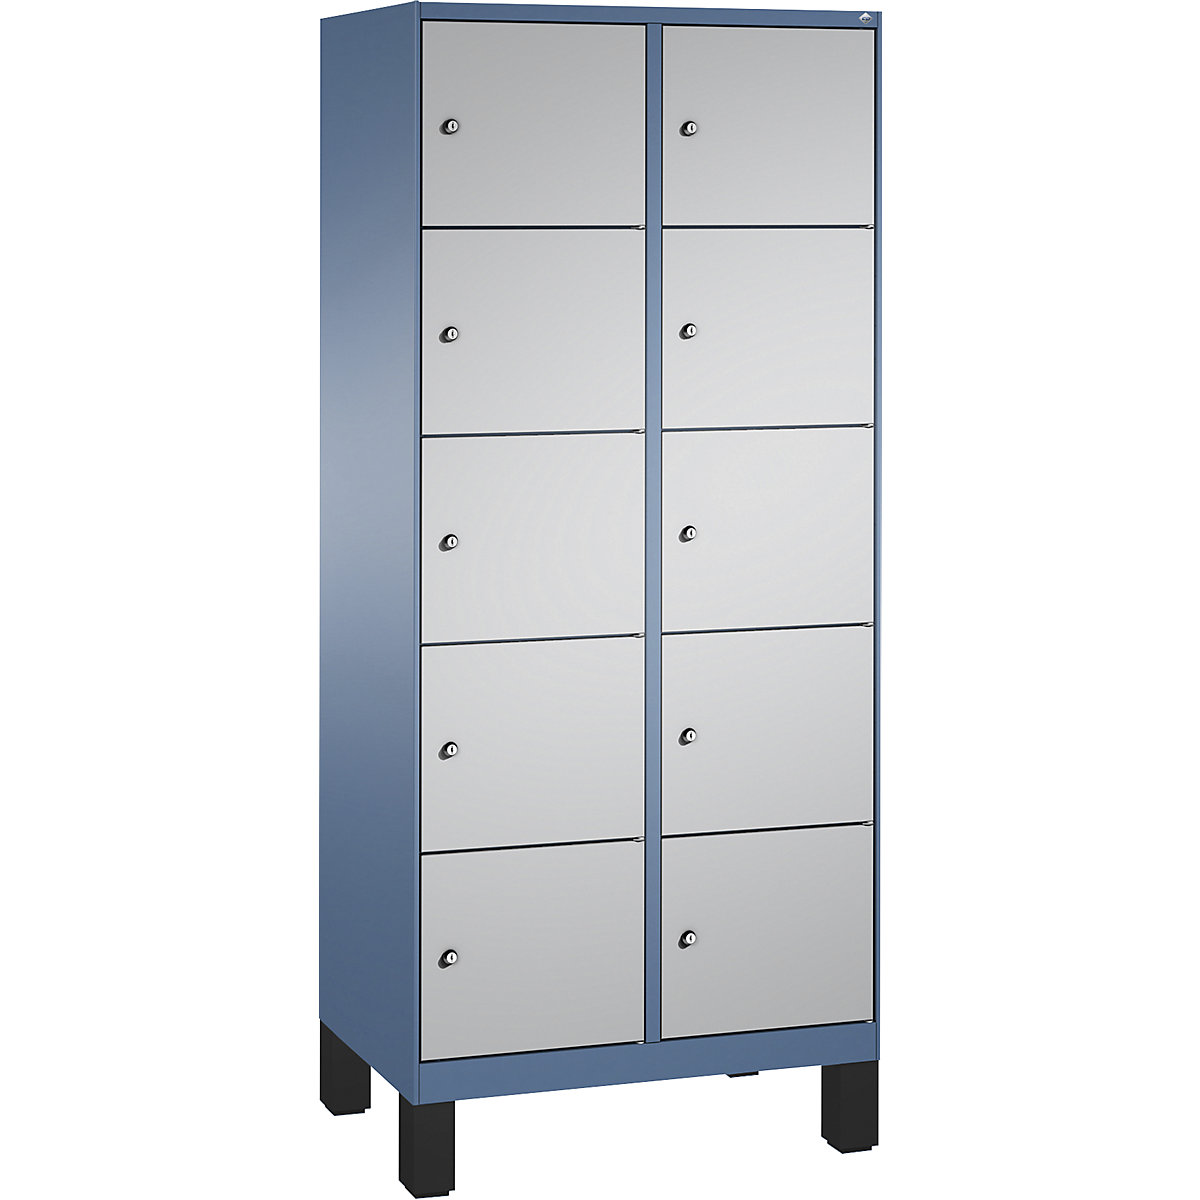 Armoire à casiers sur pieds EVOLO – C+P, 2 compartiments, 5 casiers chacun, largeur compartiments 400 mm, bleu distant / aluminium-16